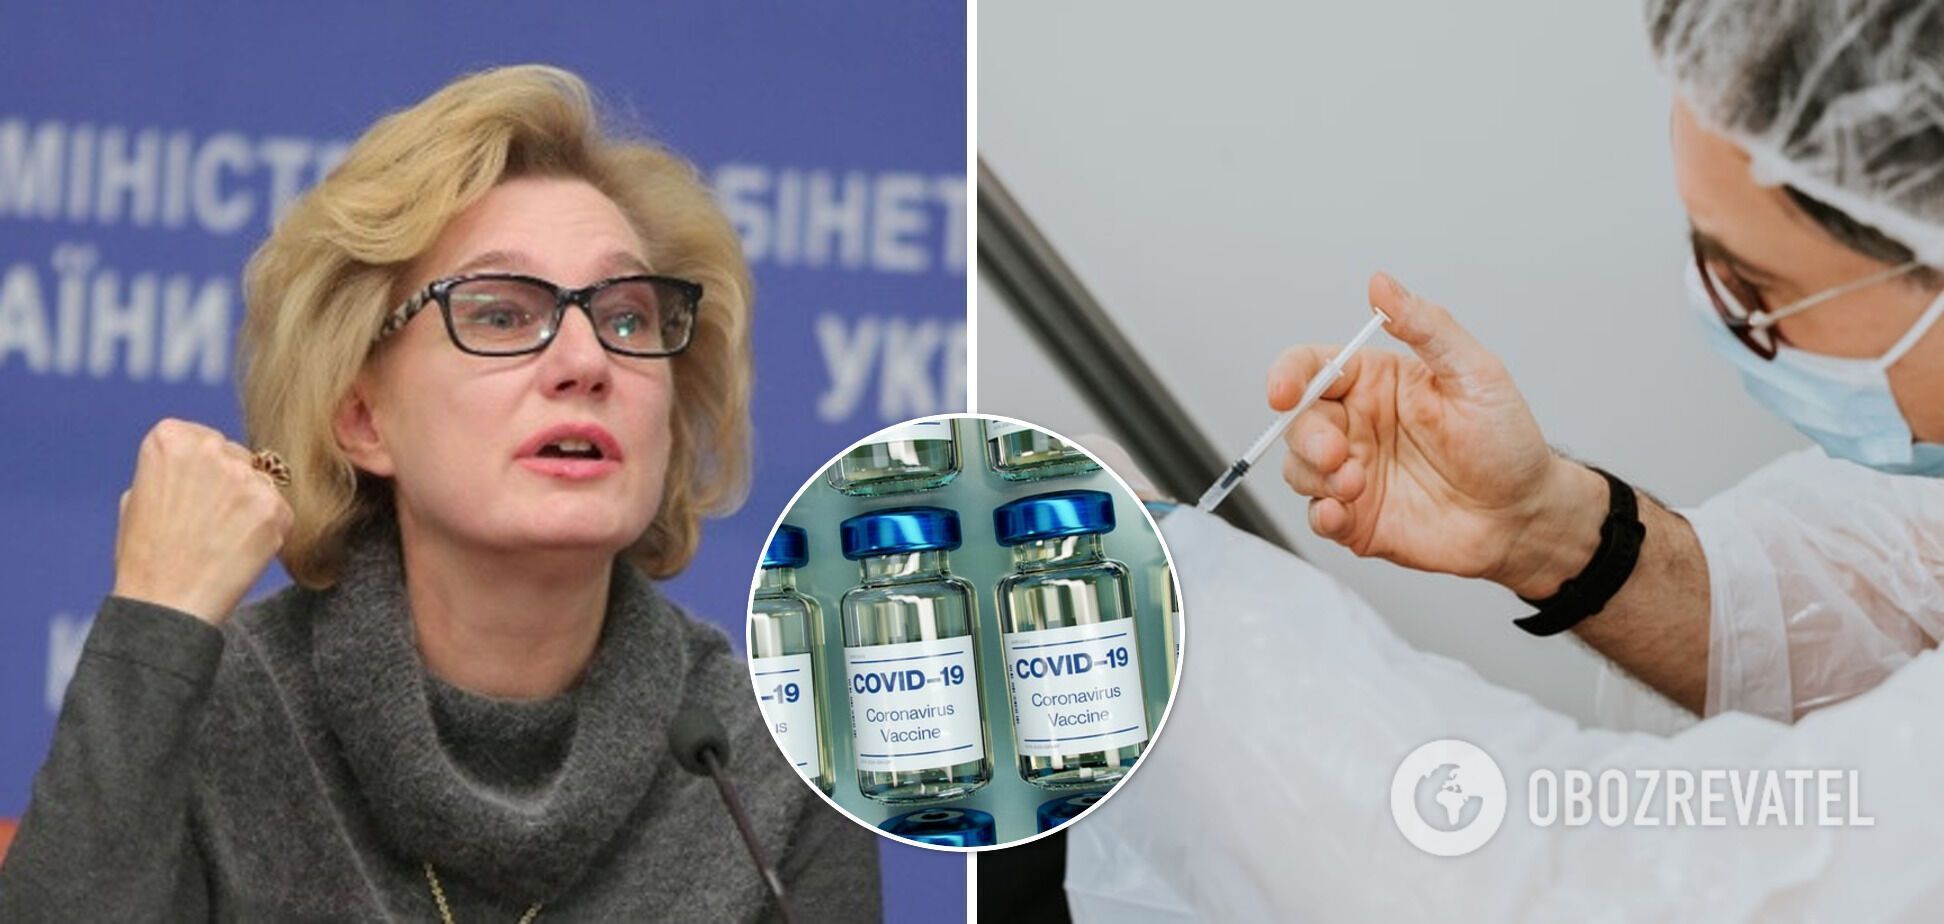 Дополнительная доза нужна только тем людям, которые имеют иммунодефицит, сказала Голубовская